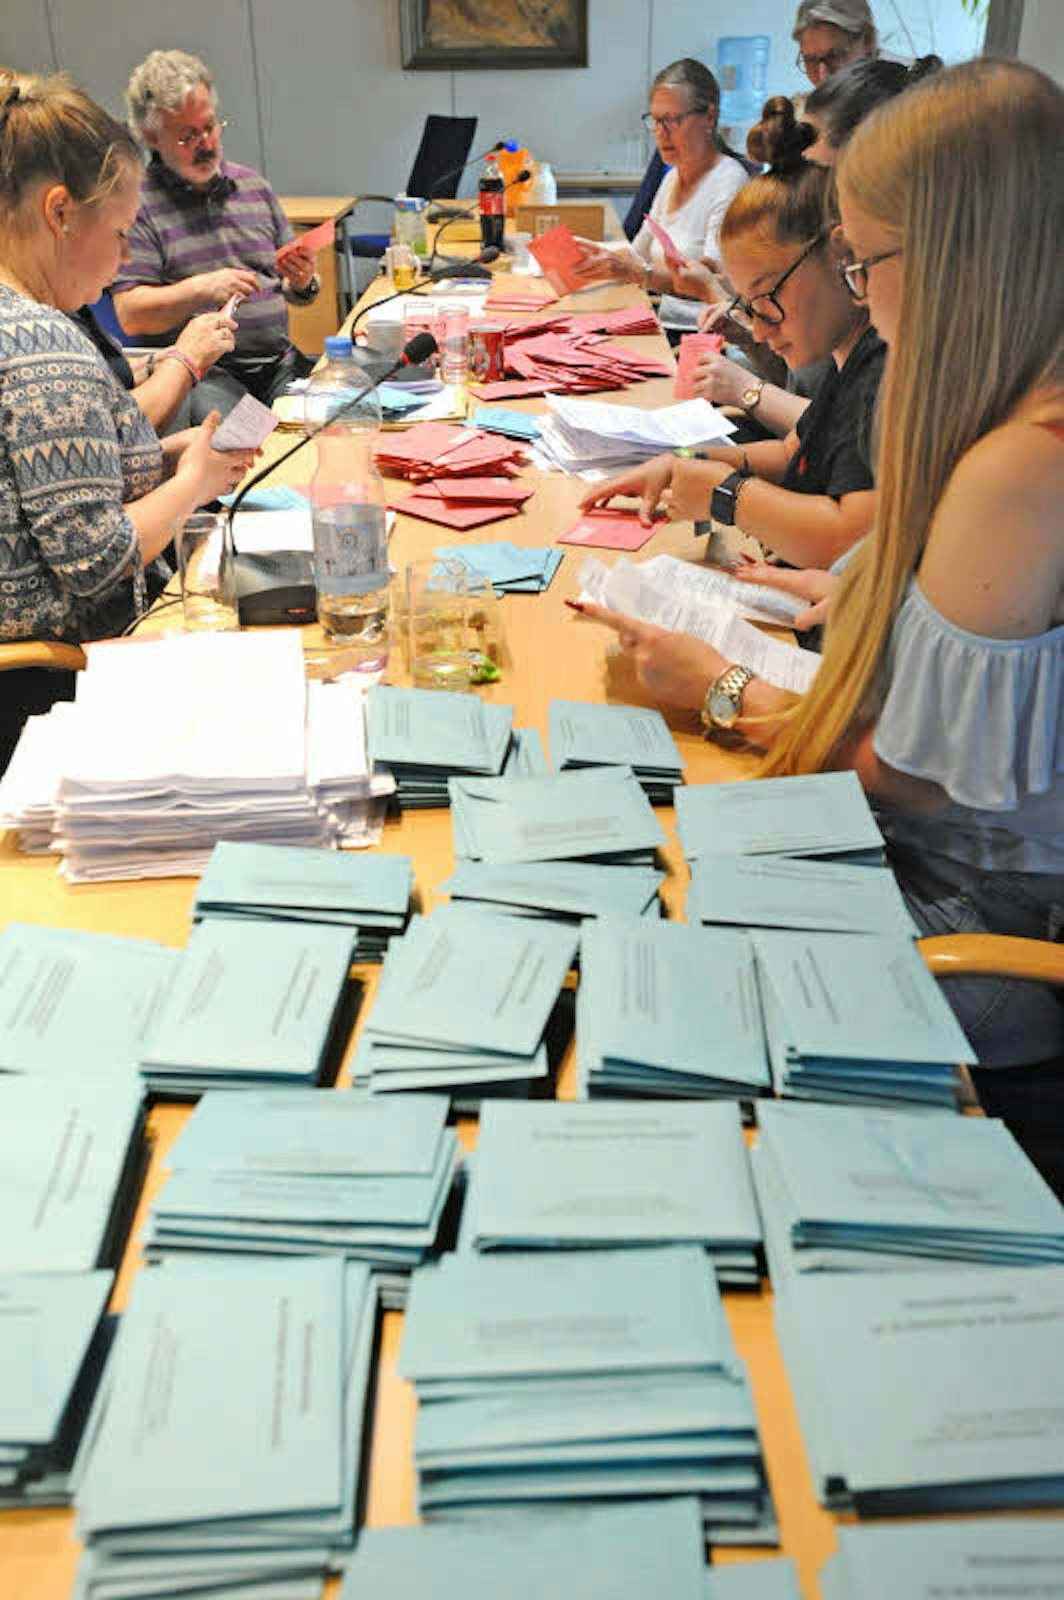 28 freiwillige Helfer der vier Briefwahl-Vorstände waren im Leichlinger Ratssaal schon ab 13 Uhr konzentriert mit dem Öffnen und Vorsortieren der roten Briefumschläge beschäftigt.